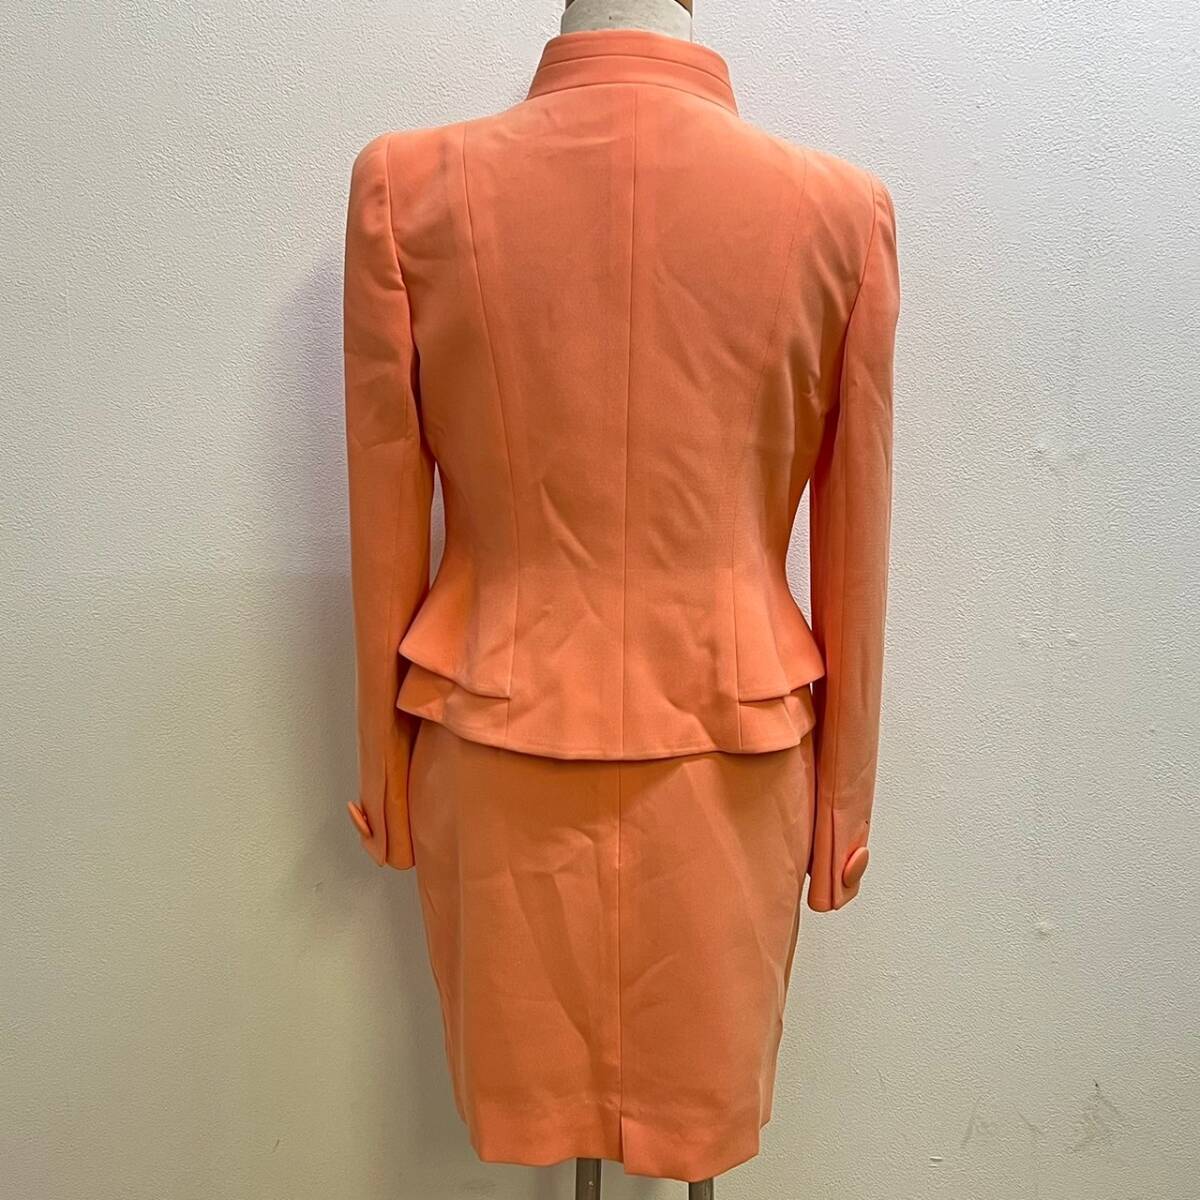 BCg051ハ 80 VELLA/ベラ 銀座マギー スカート スーツ サイズ38 オレンジ ピンク系 ジャケット セットアップ レディース 352-2313 服 洋服の画像2